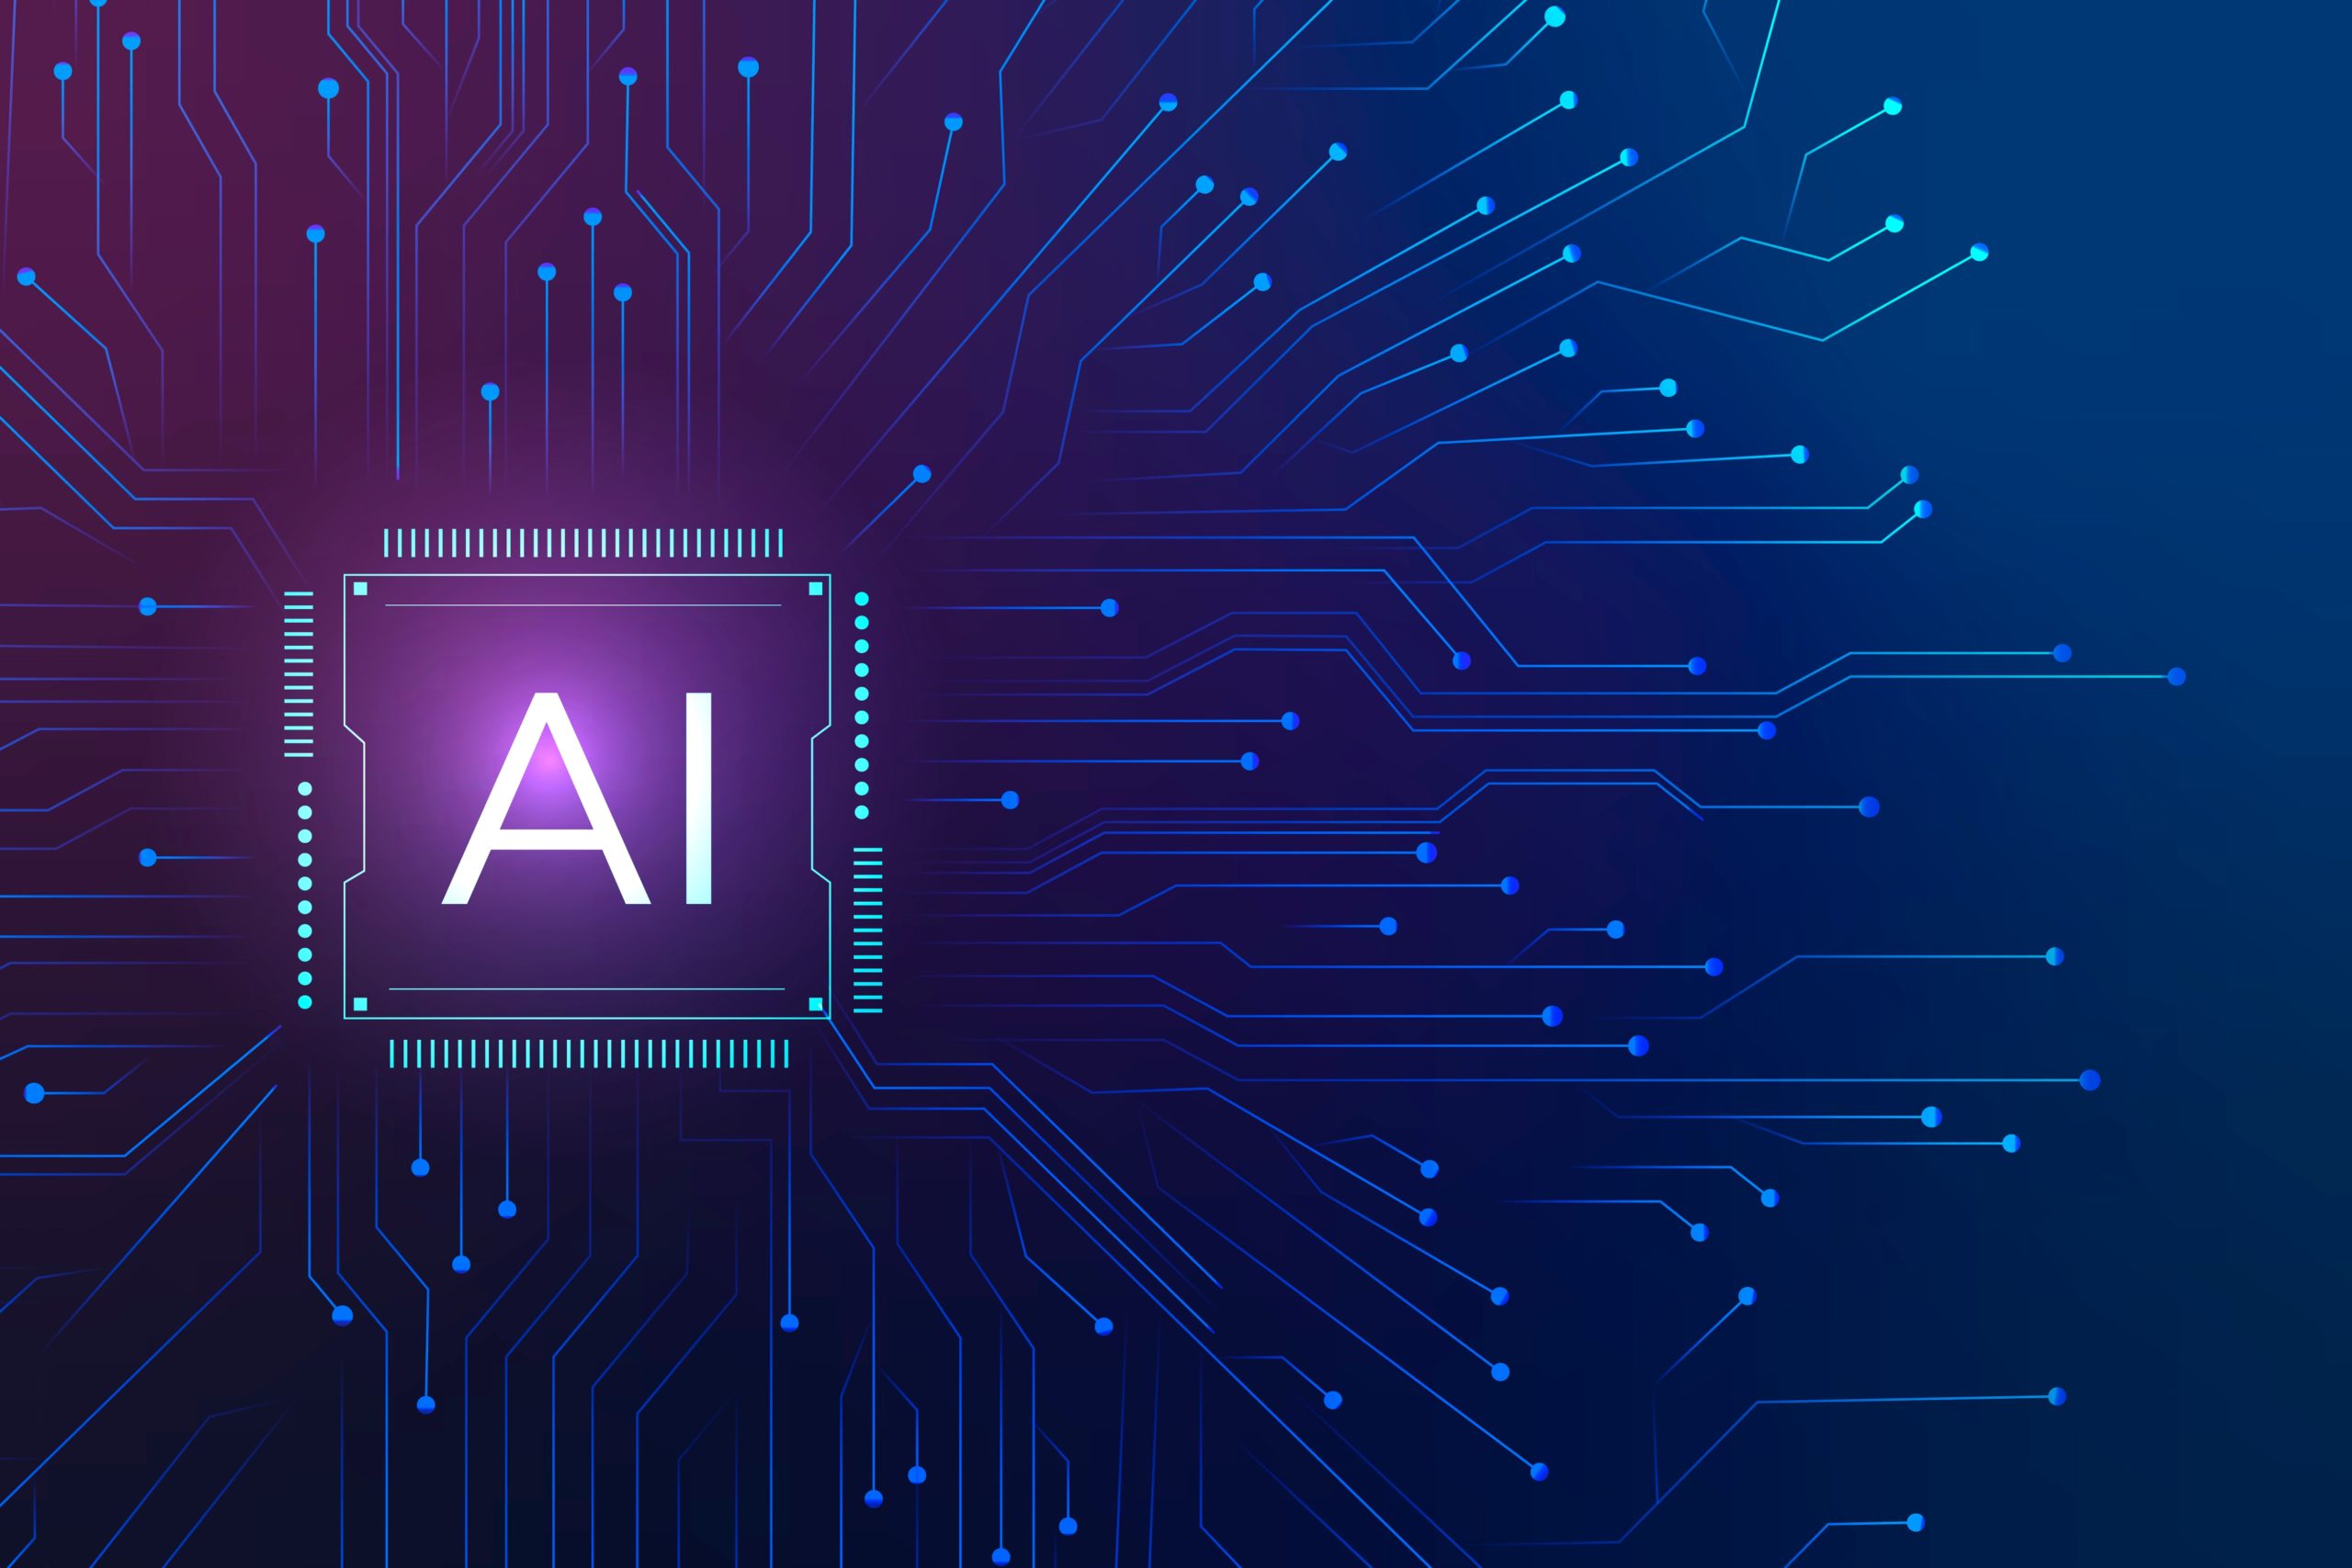 这张图片展示了一个代表人工智能的芯片图案，背景是蓝色的，上面有白色的电路板线路设计，中心写着“AI”。